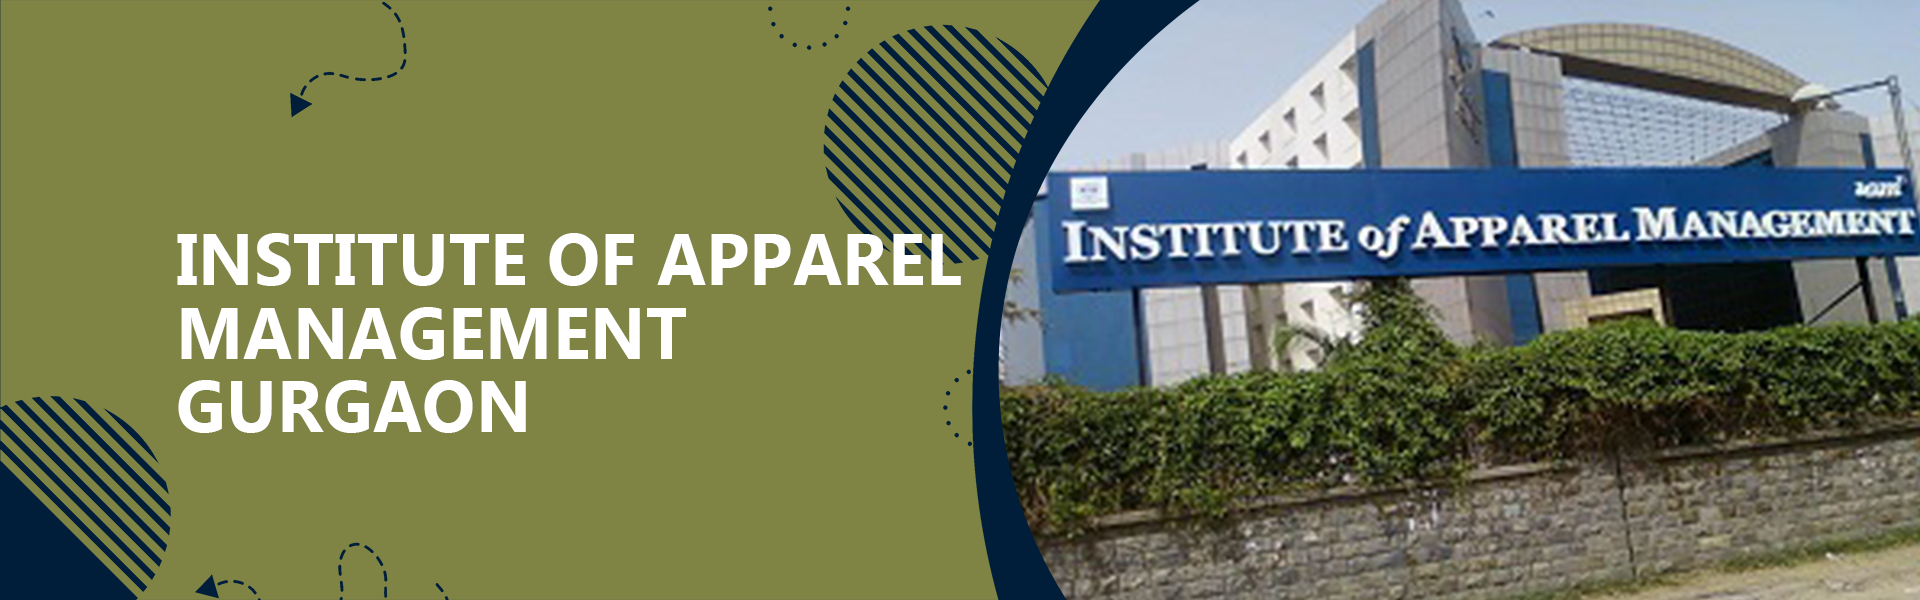 Institute Of Apparel Management, Gurgaon